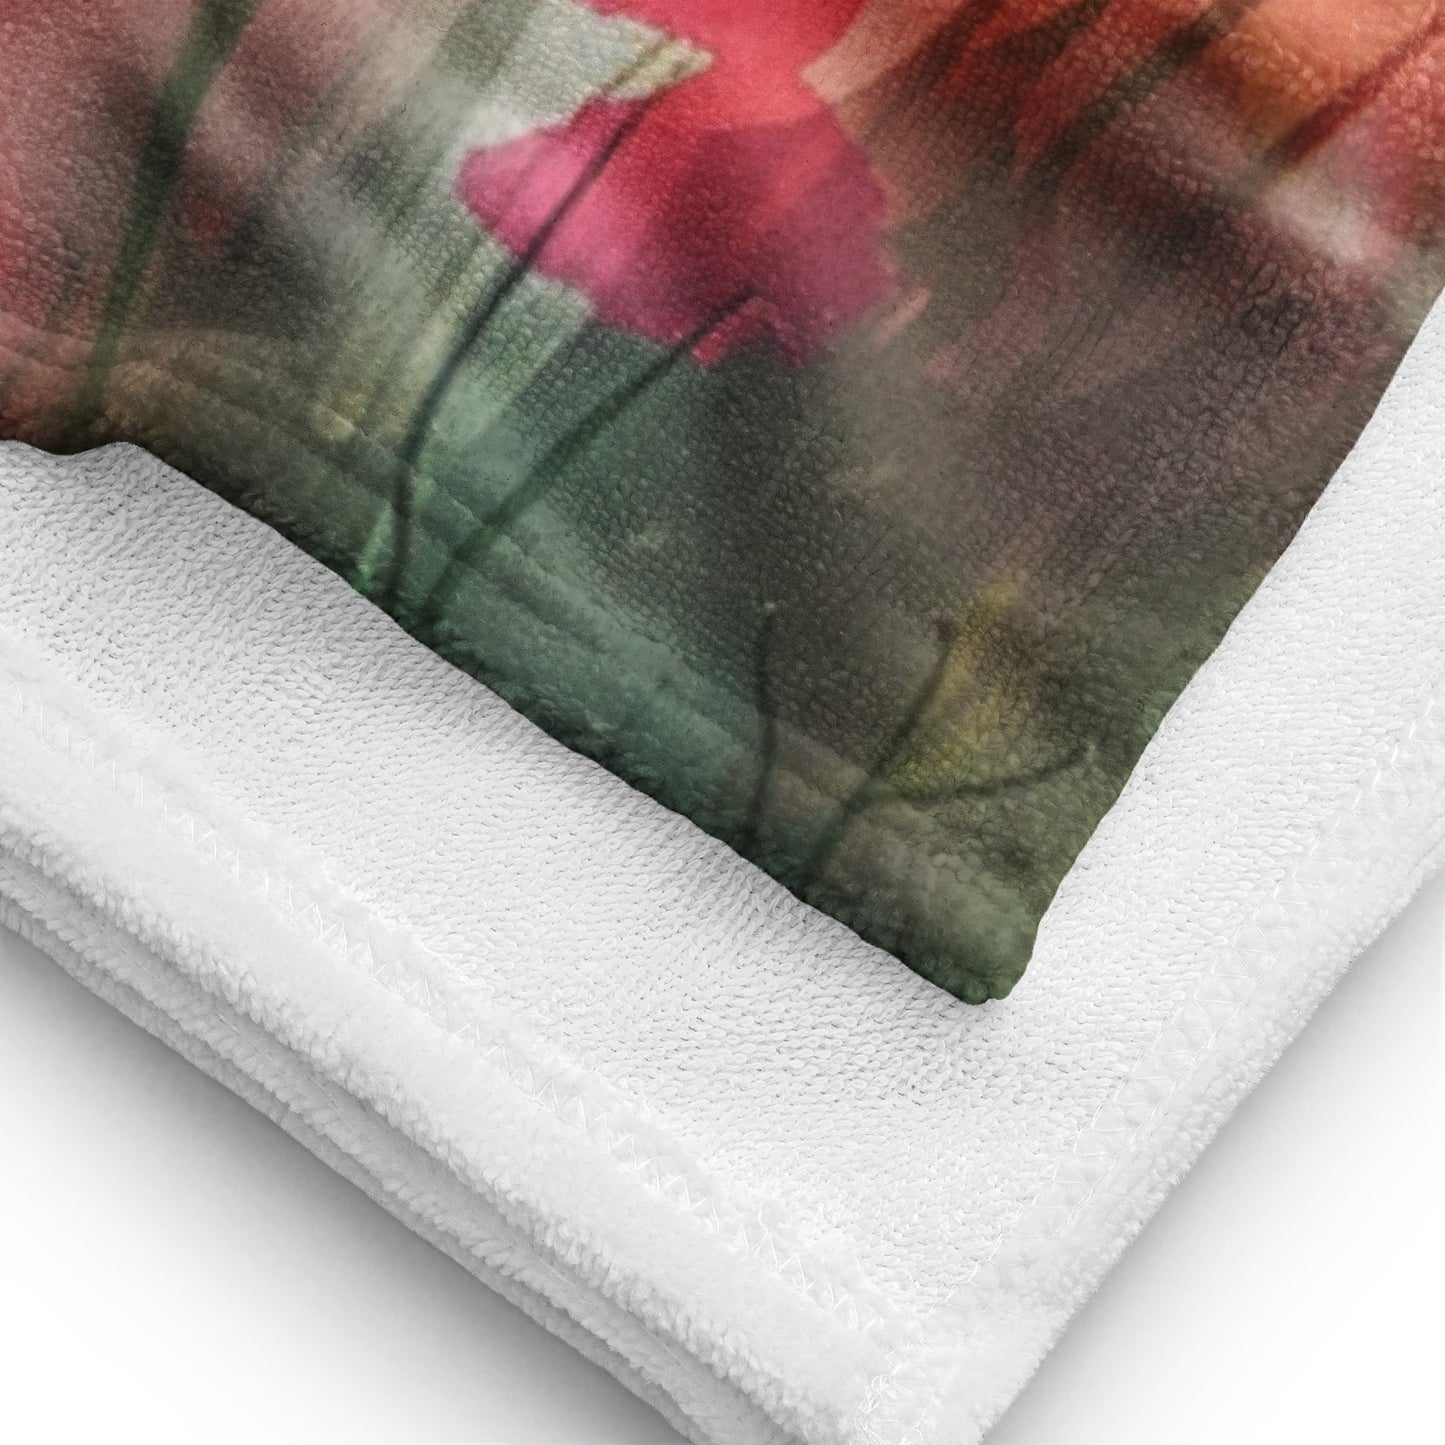 Poppy 1 Towel